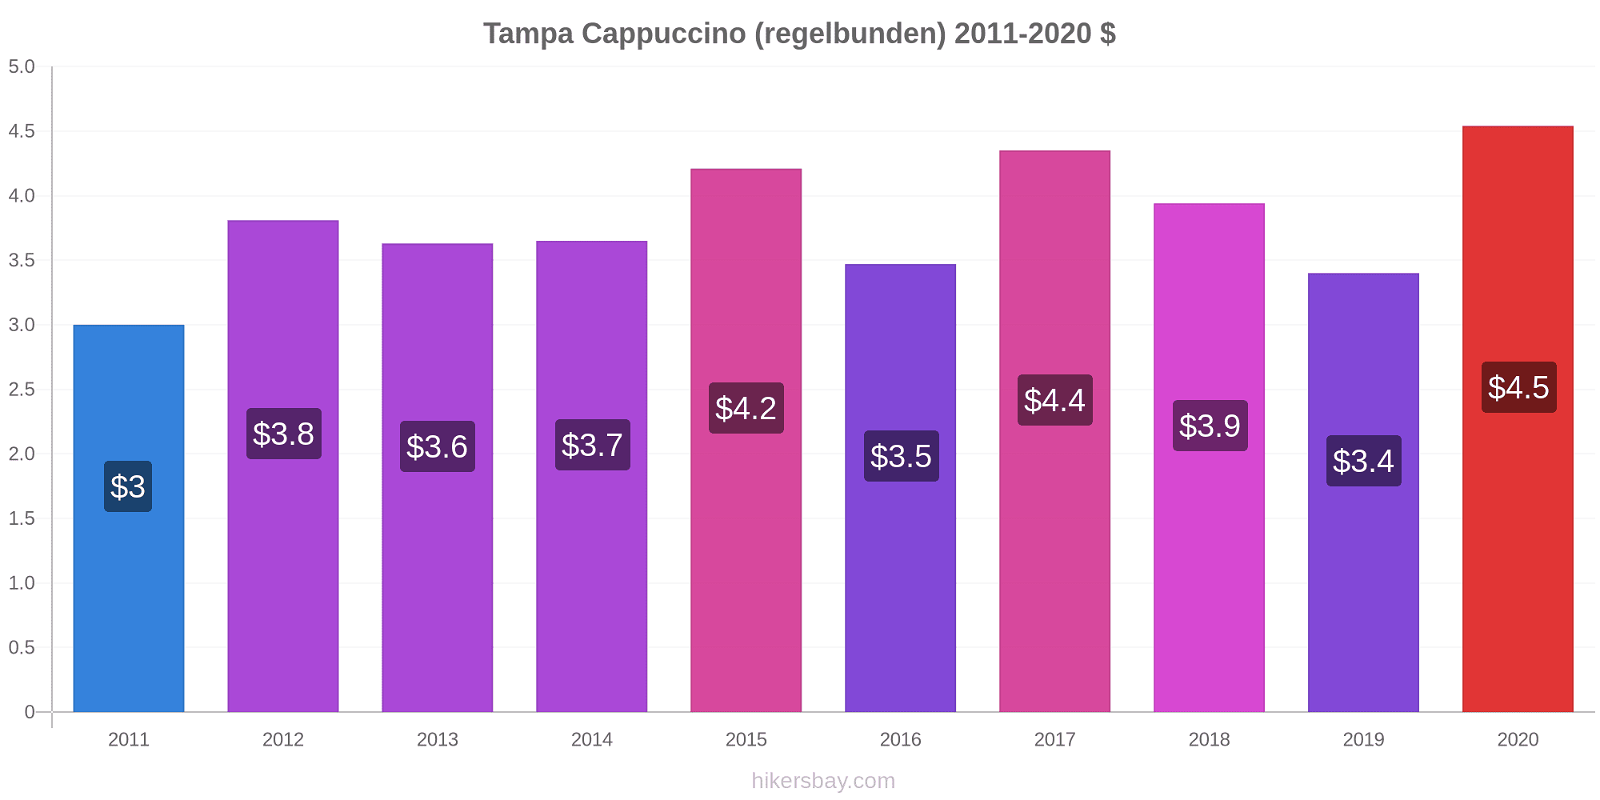 Tampa prisförändringar Cappuccino (regelbunden) hikersbay.com